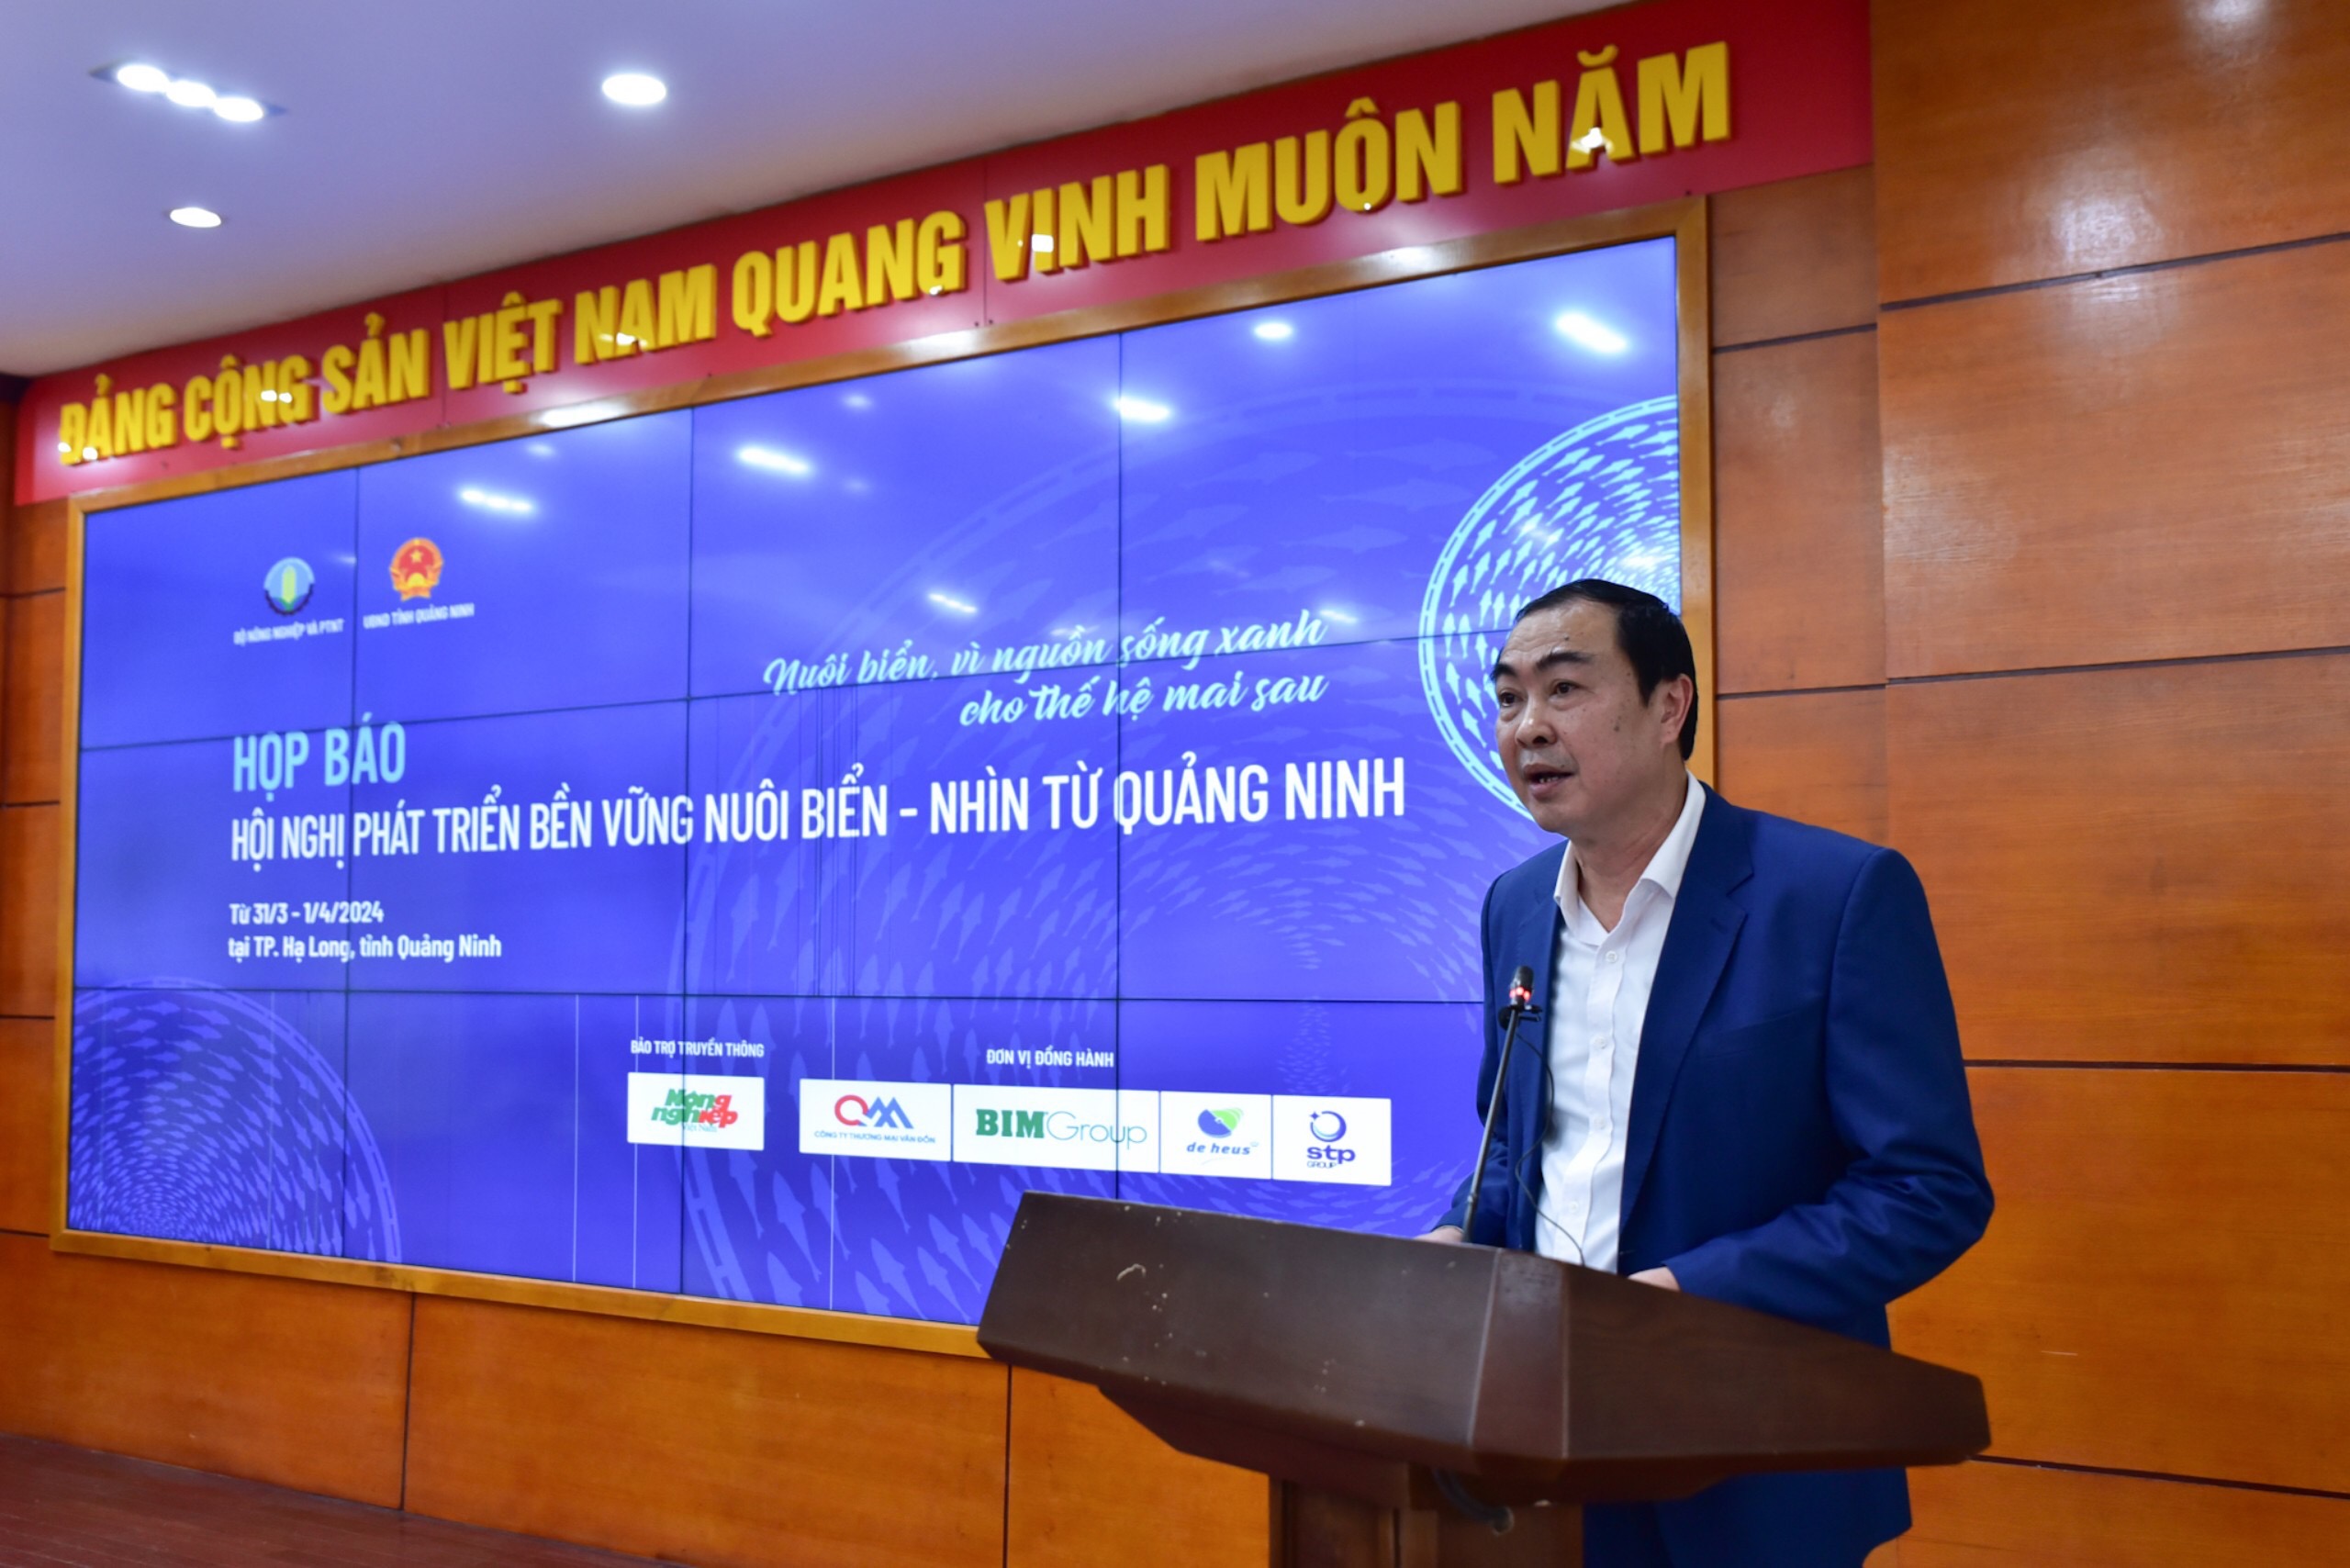 Giám đốc Sở NN&PTNT tỉnh Quảng Ninh Nguyễn Minh Sơn thông tin tại cuộc họp báo.